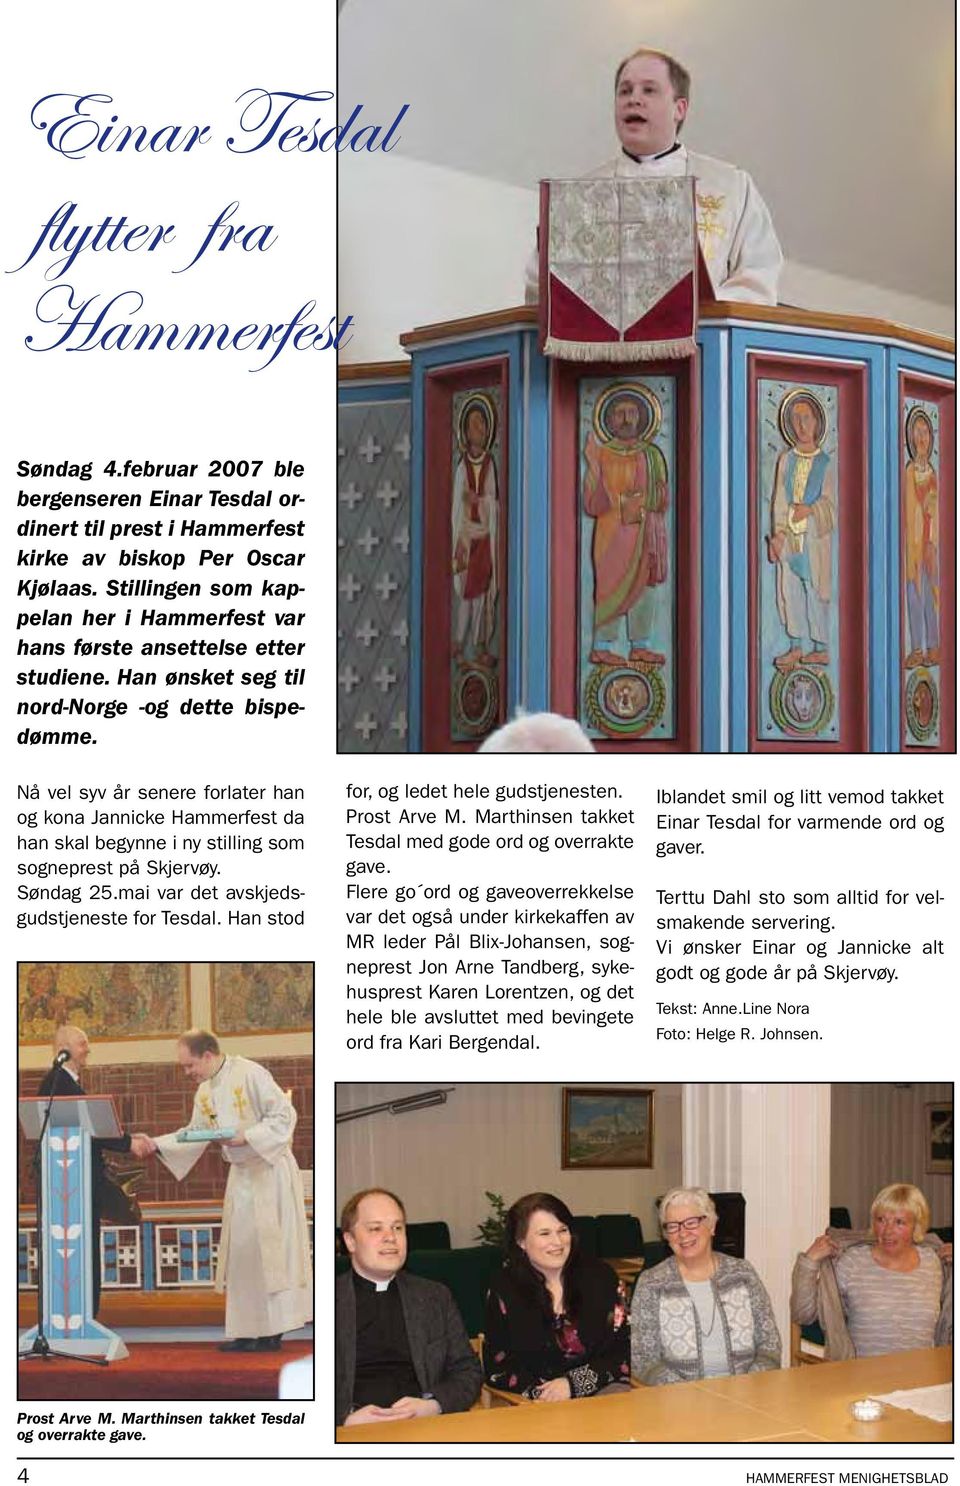 Nå vel syv år senere forlater han og kona Jannicke Hammerfest da han skal begynne i ny stilling som sogneprest på Skjervøy. Søndag 25.mai var det avskjedsgudstjeneste for Tesdal.